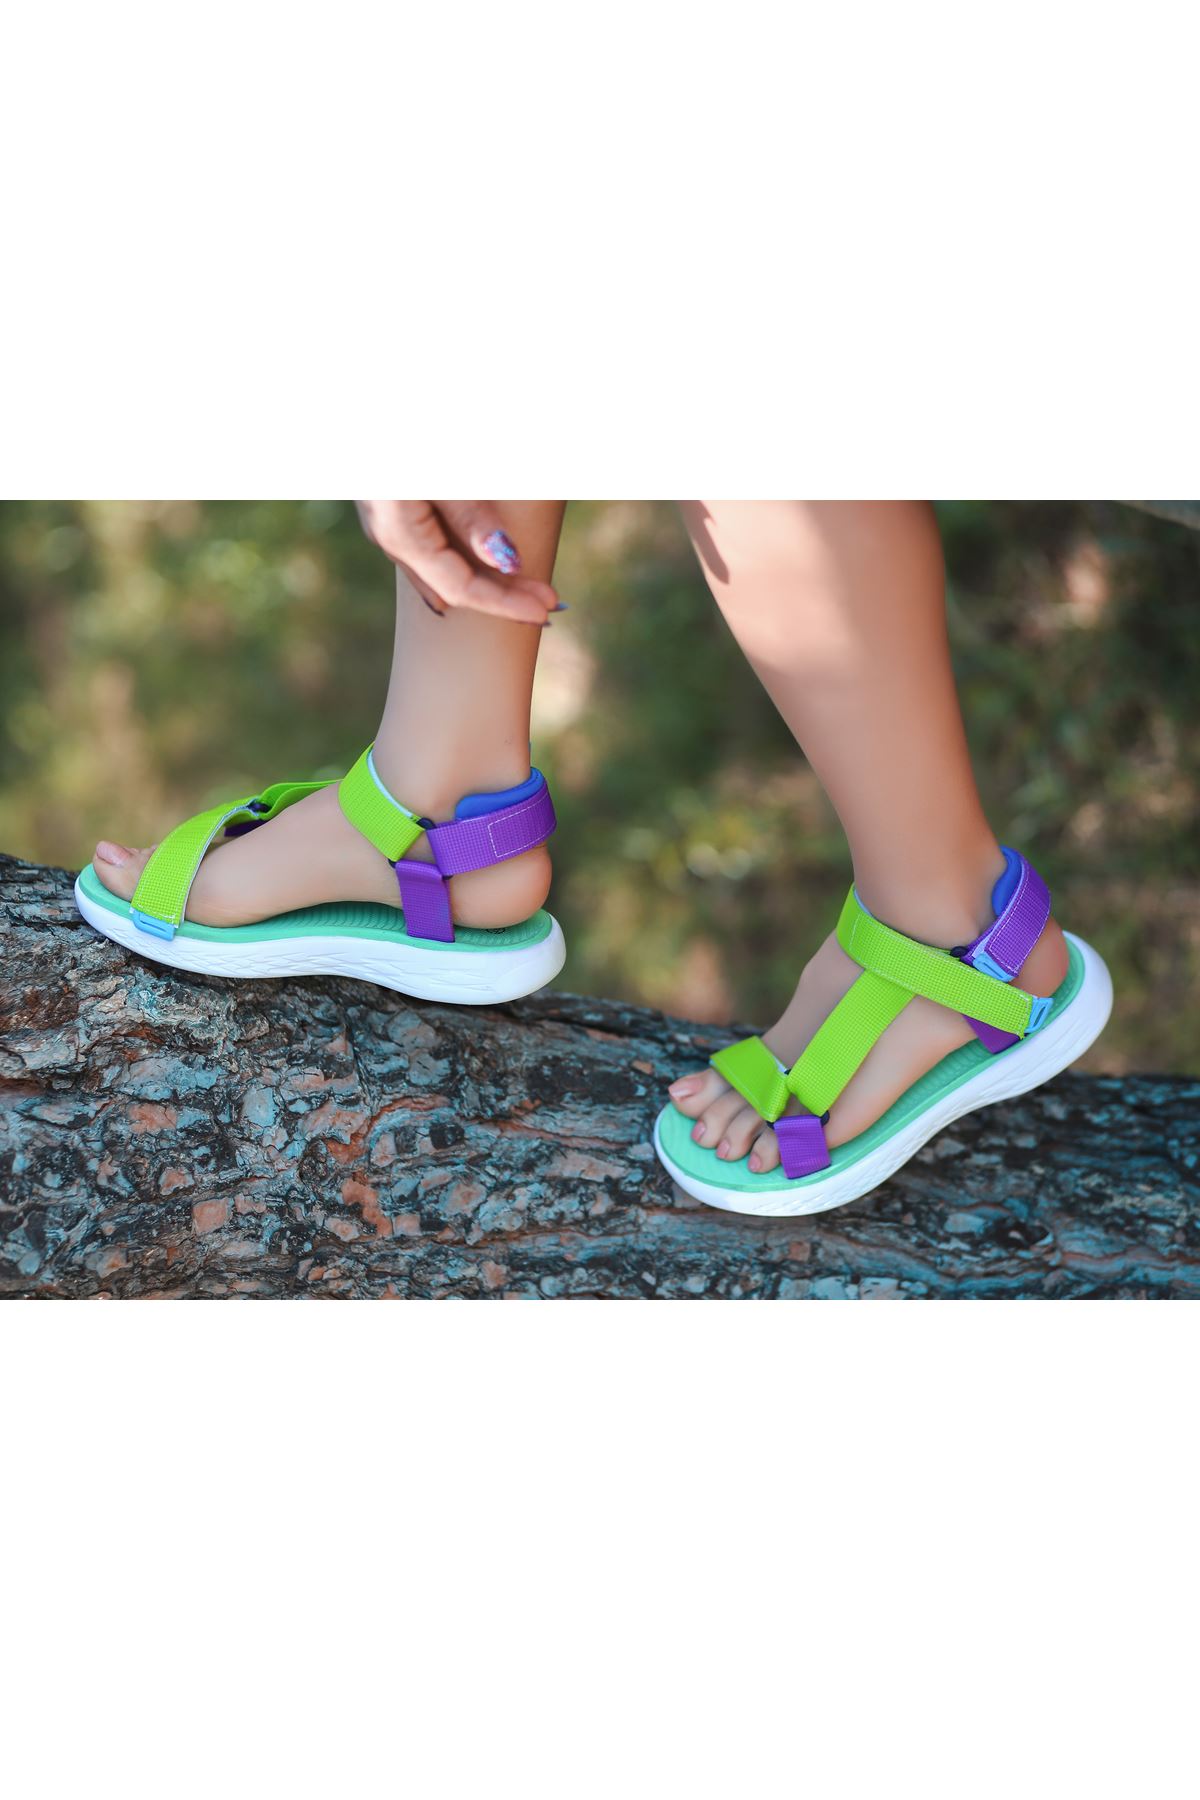 King Neon Yeşil-Mor Cırtlı Kadın Sandalet